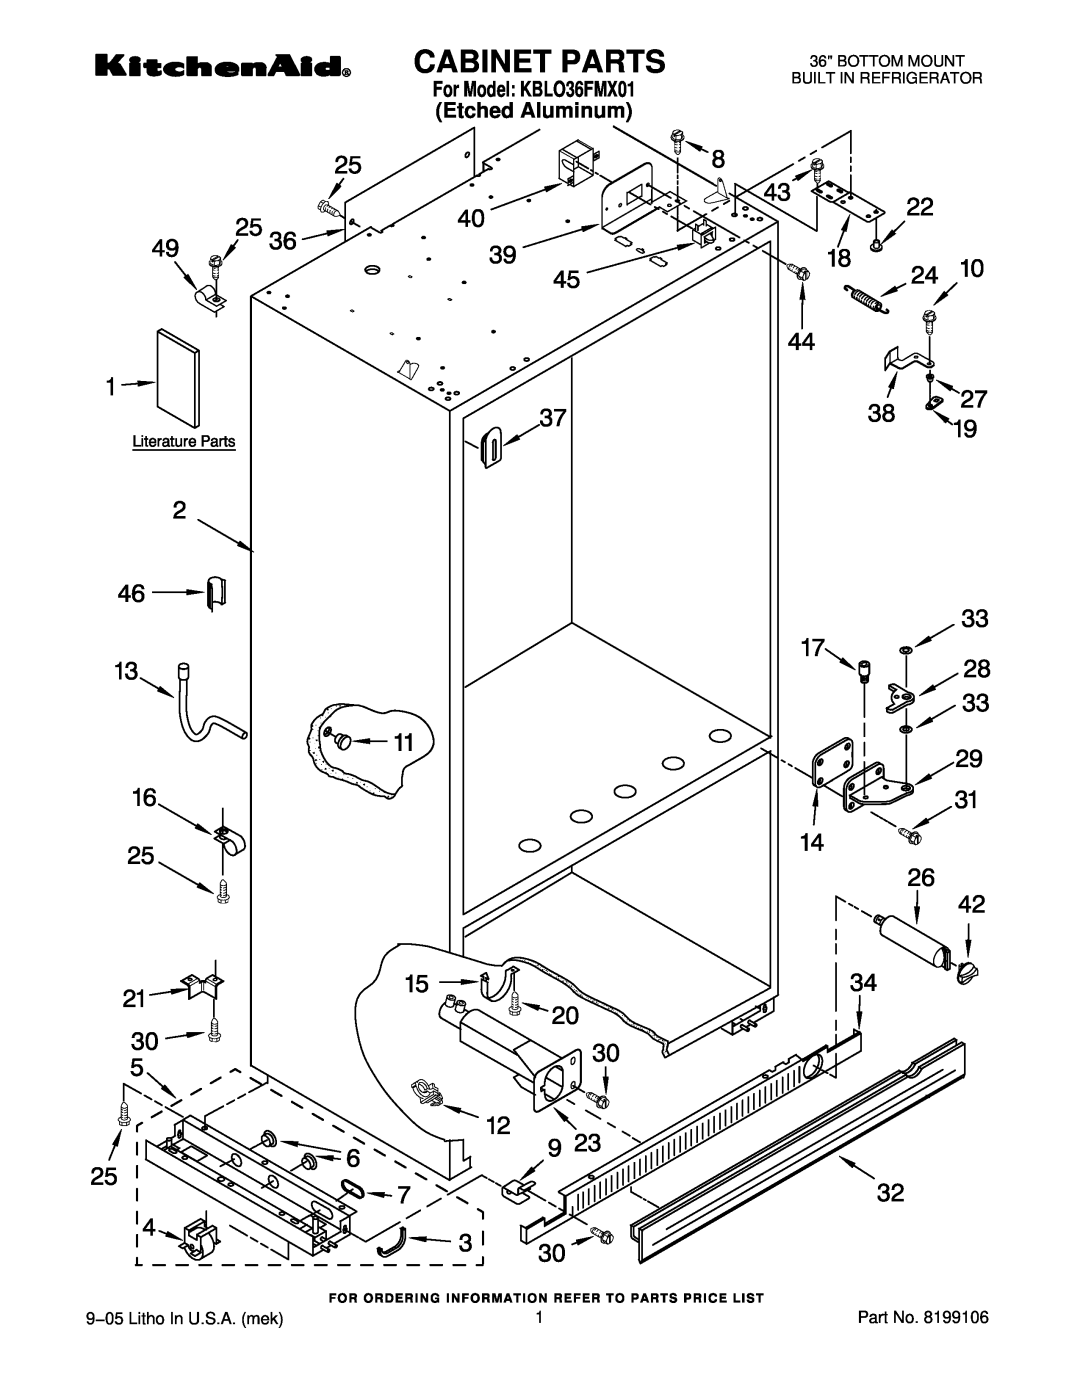 KitchenAid manual Cabinet Parts, 9−05 Litho In U.S.A. mek, For Model KBLO36FMX01 Etched Aluminum 